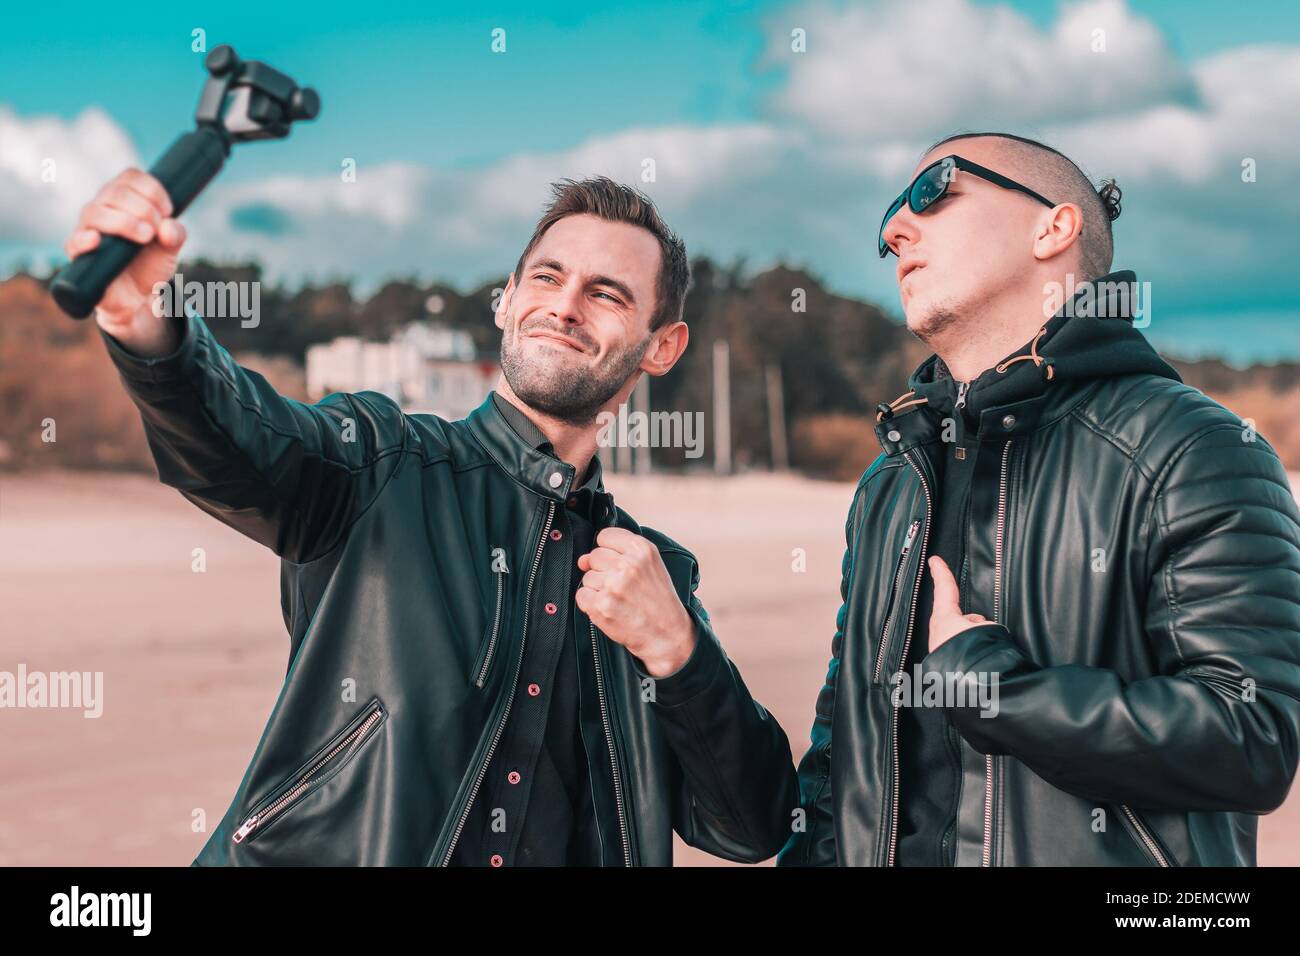 Zwei schöne männliche Freunde machen Selfie mit Action-Kamera mit Gimbal Stabilisator am Strand. Jugendliche Männer in schwarzen Kleidern Spaß haben, indem Sie Fotos Stockfoto